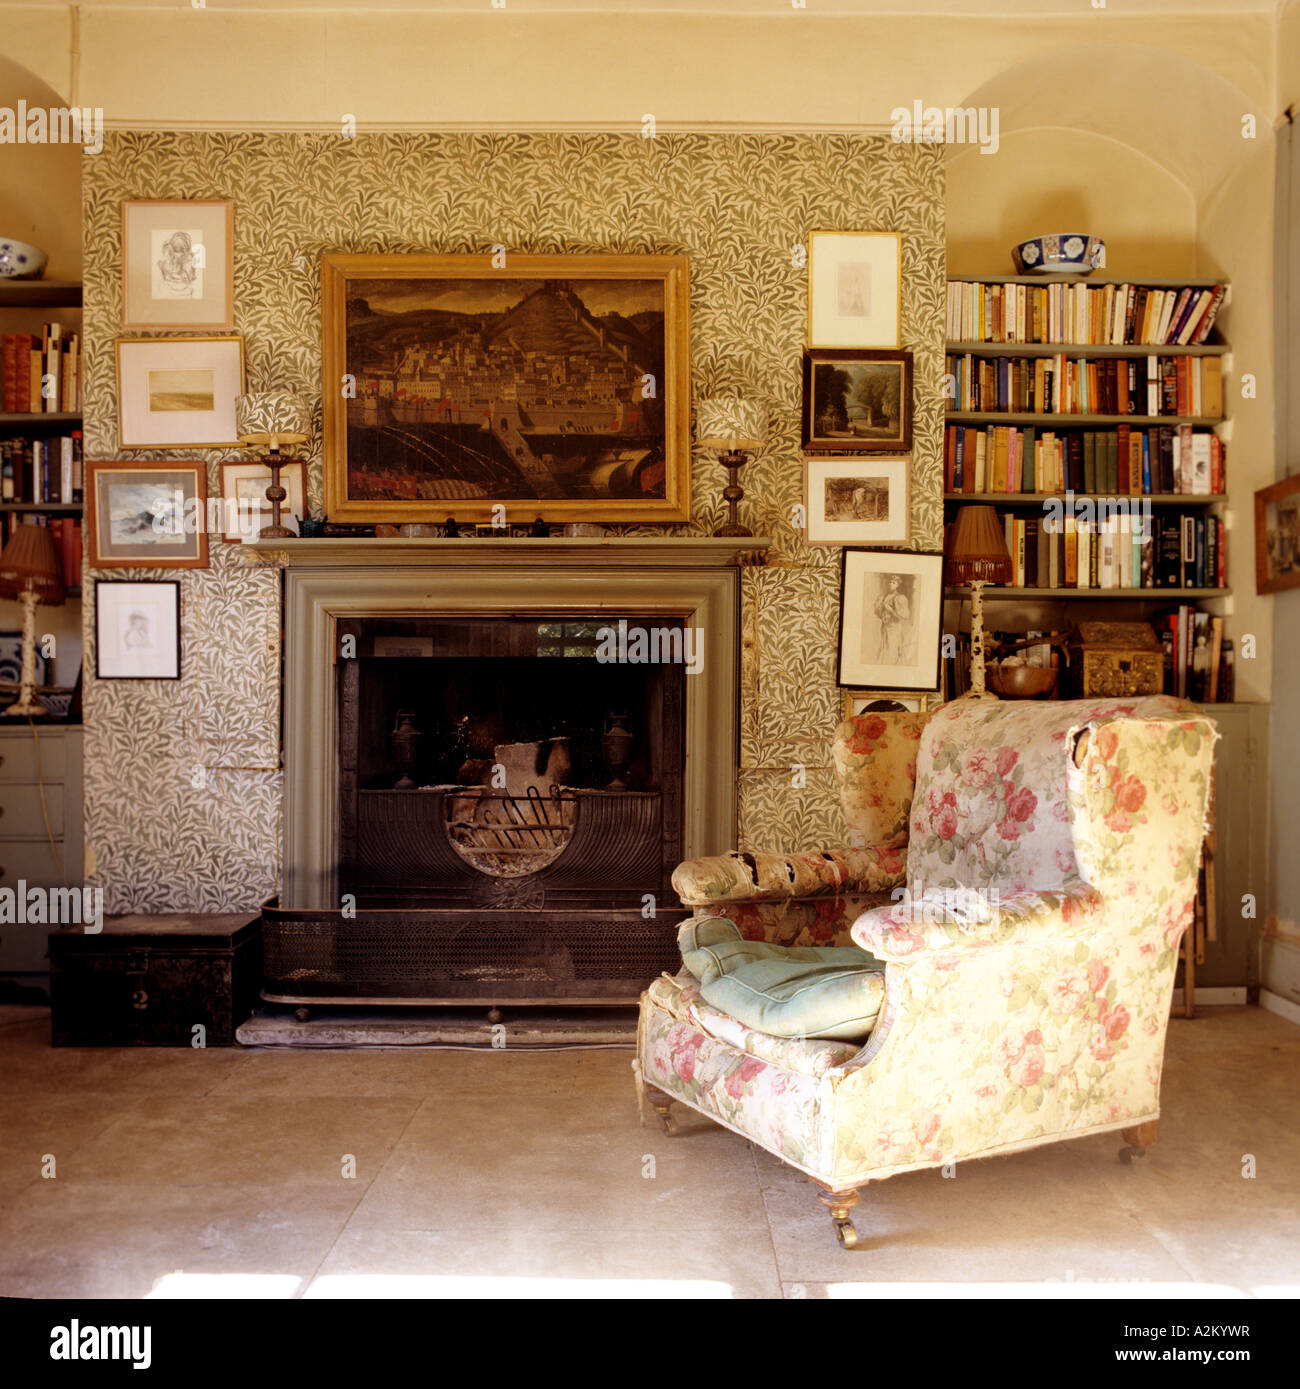 Fauteuil Floral en salon avec William Morris wallpaper Banque D'Images